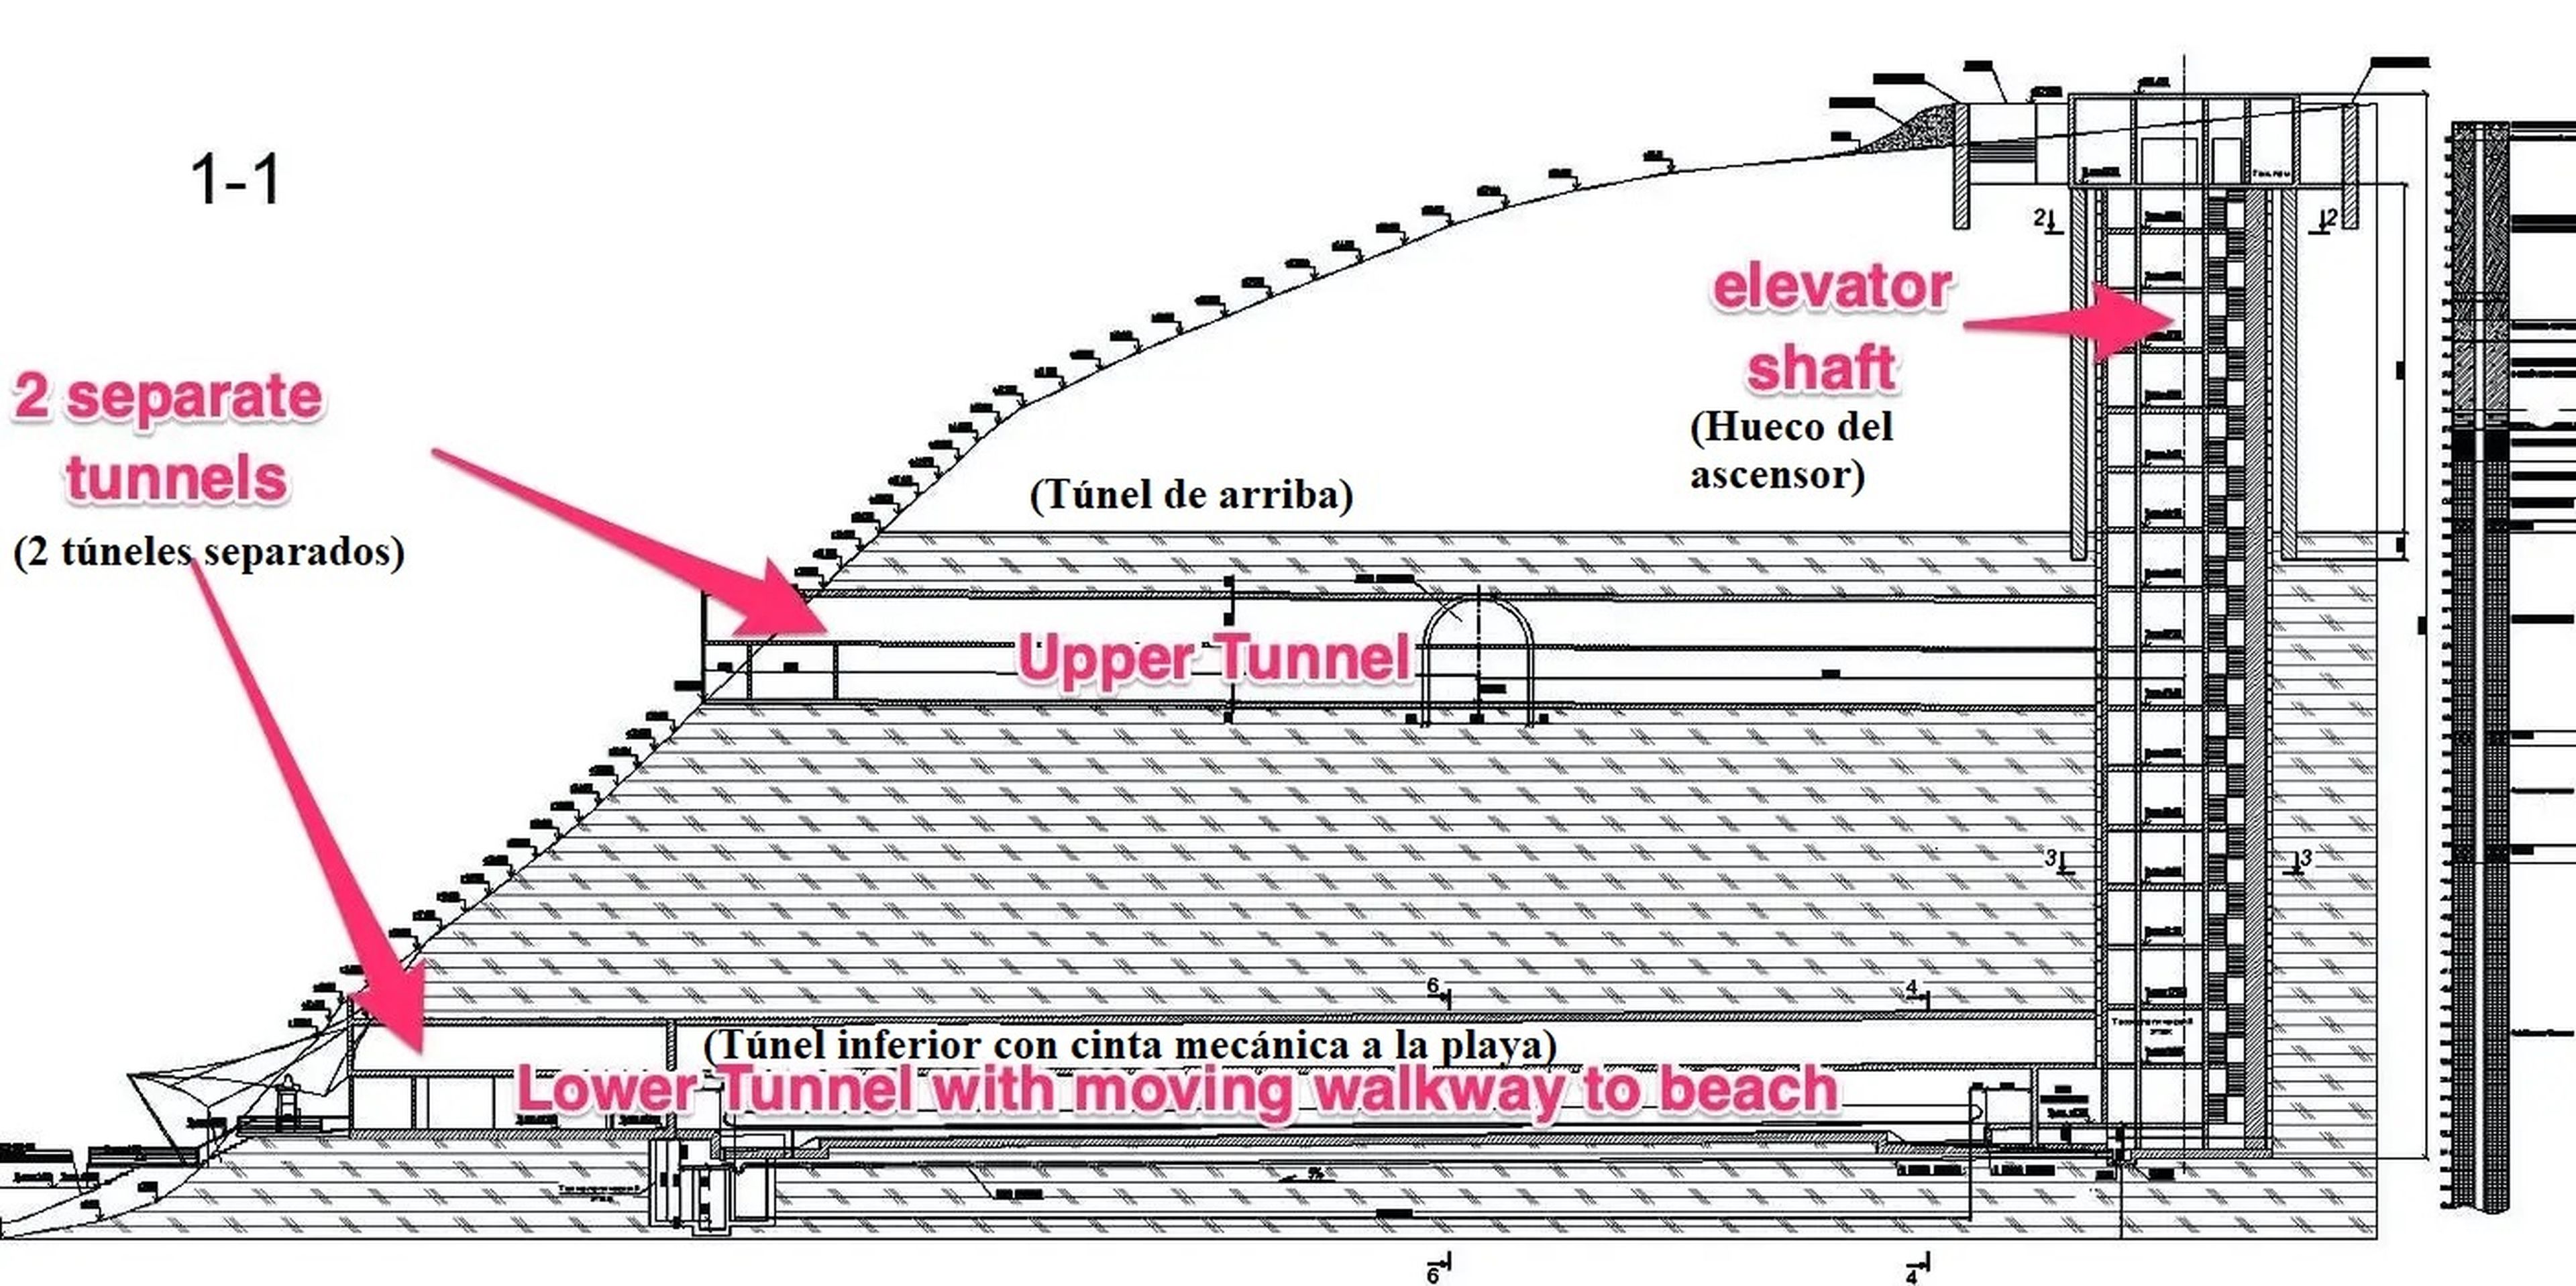 El corte transversal de la ladera muestra 2 túneles conectados por un ascensor, a la derecha.